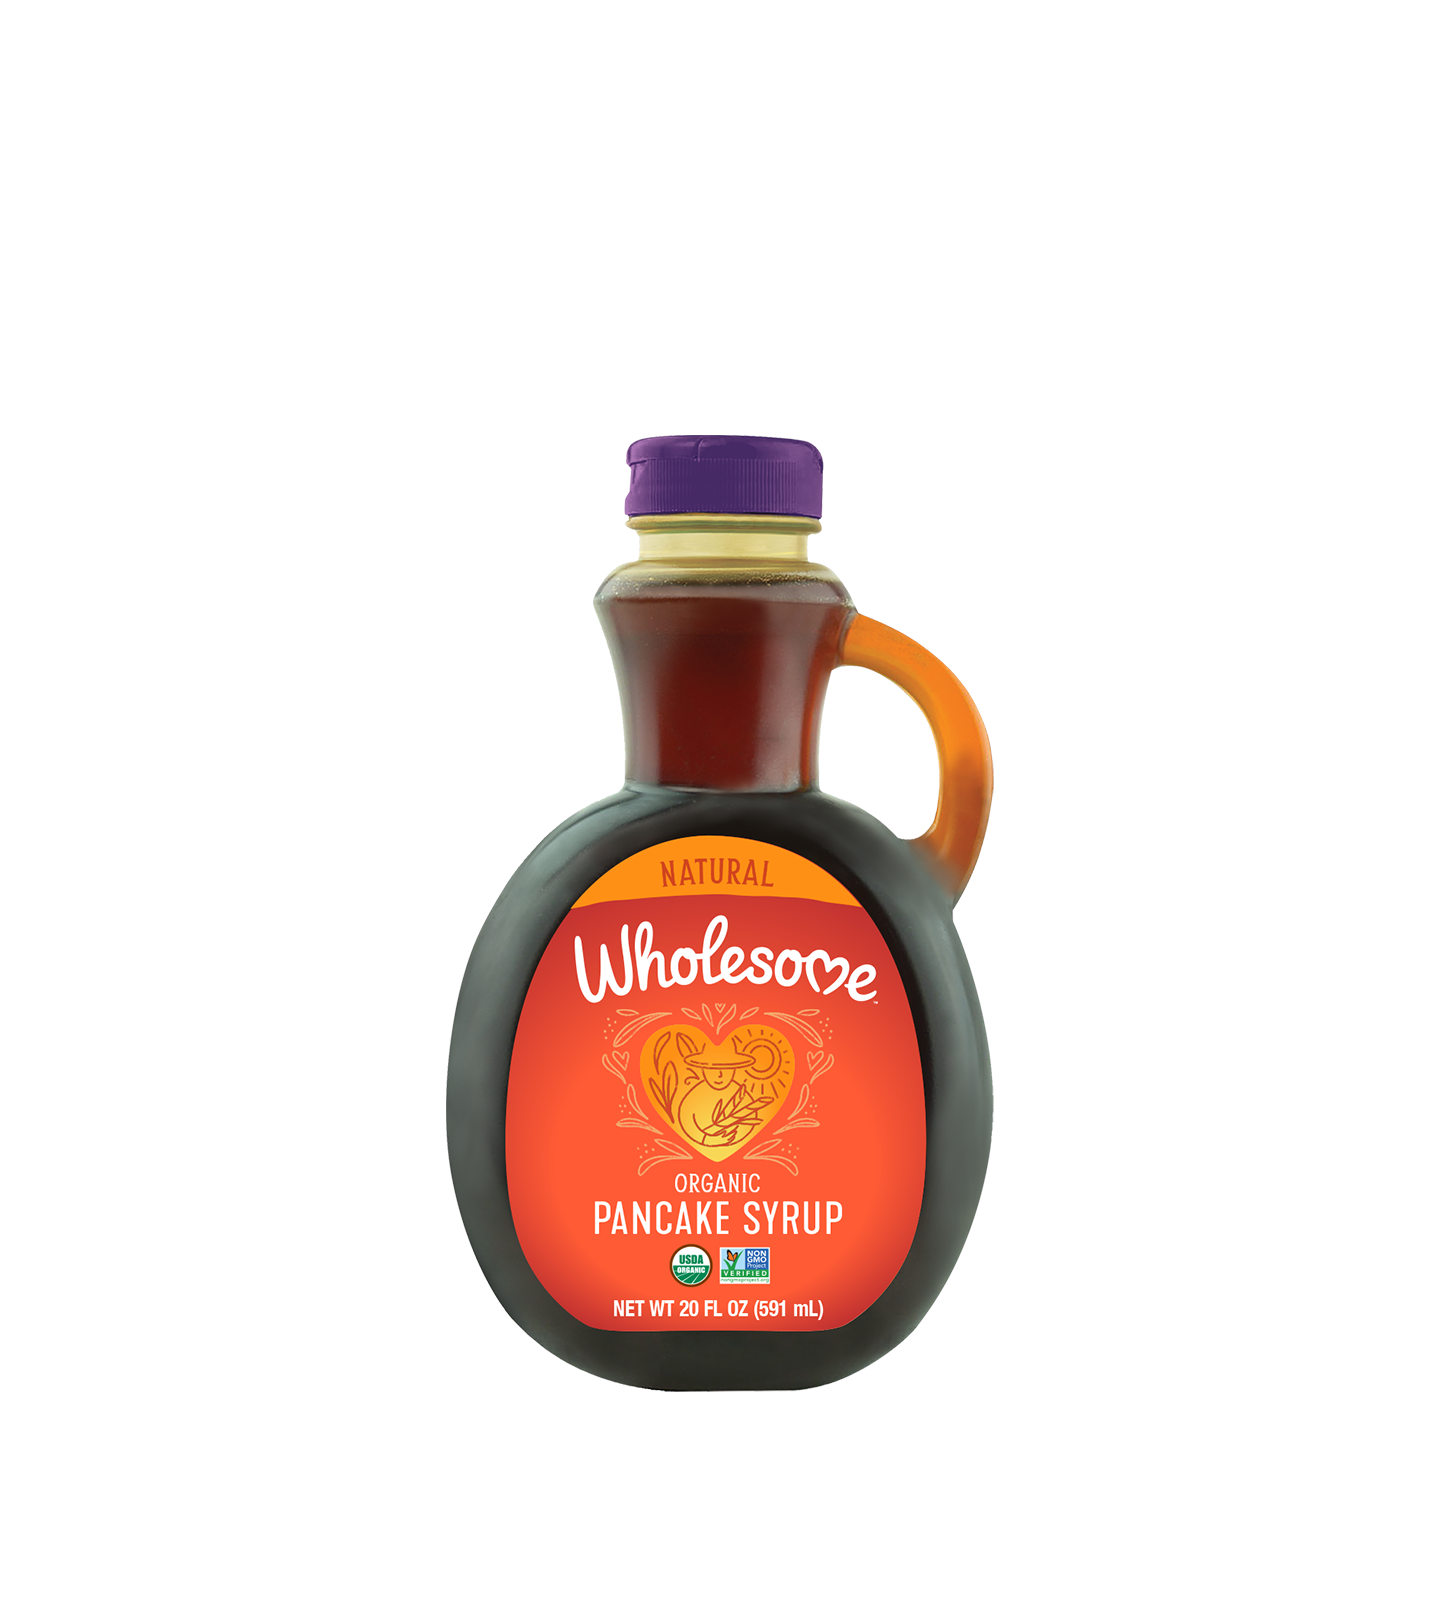 Organic Pancake Syrup - Carousel Image